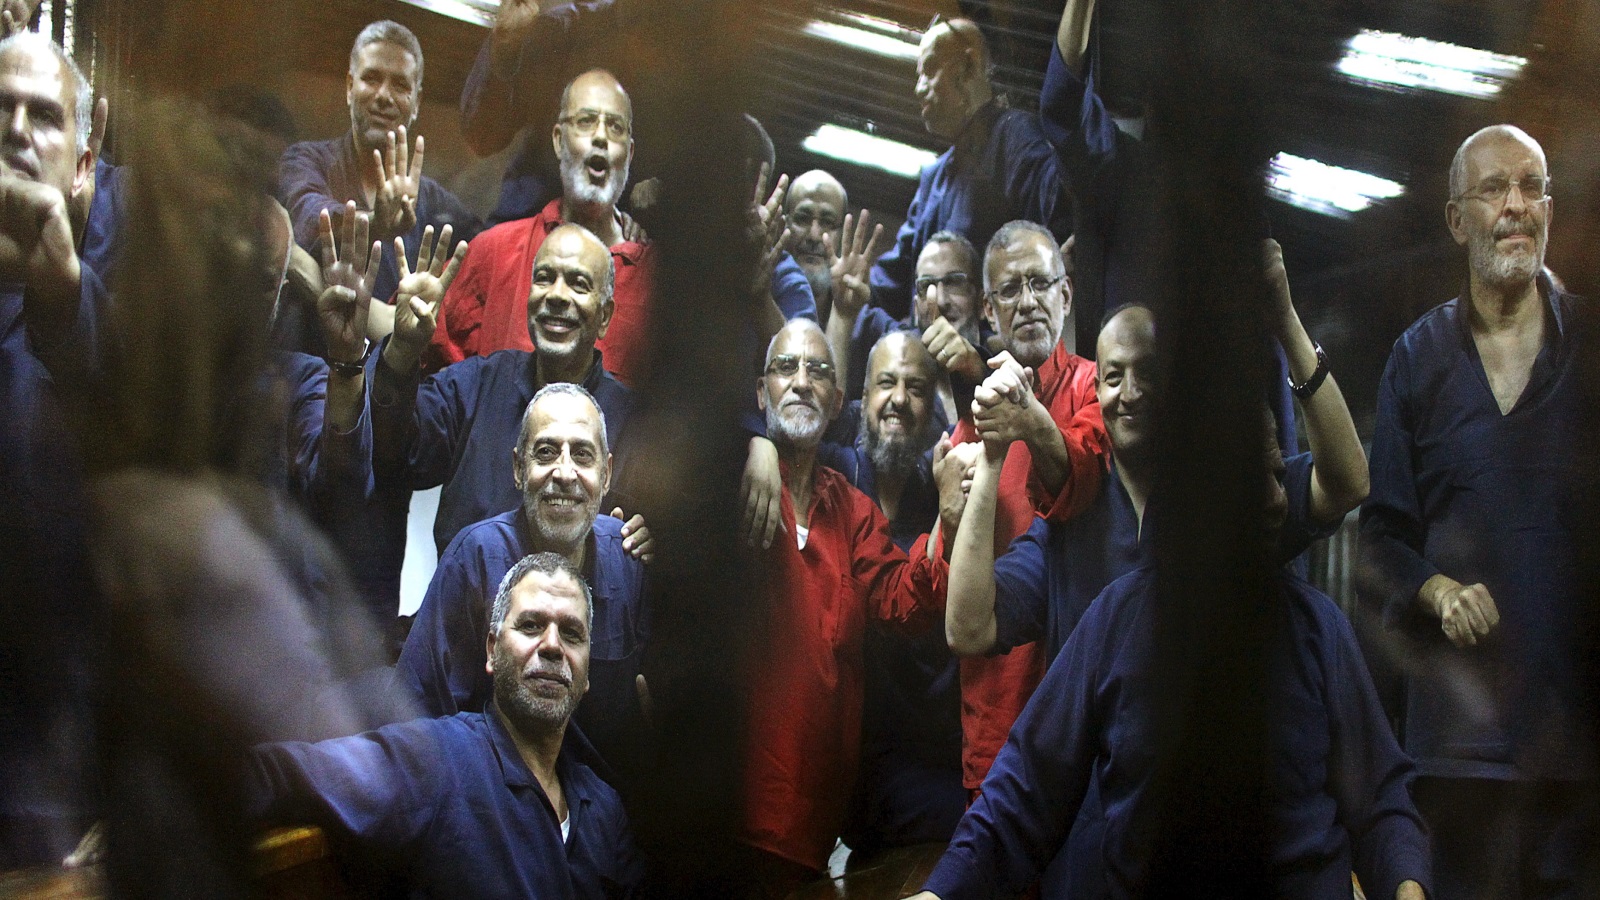 في مصر.. المعارضة المصرية موجودة في السجون أو المعتقلات أو المخفية قصريا أو تحاكم عسكريا بالإعدام